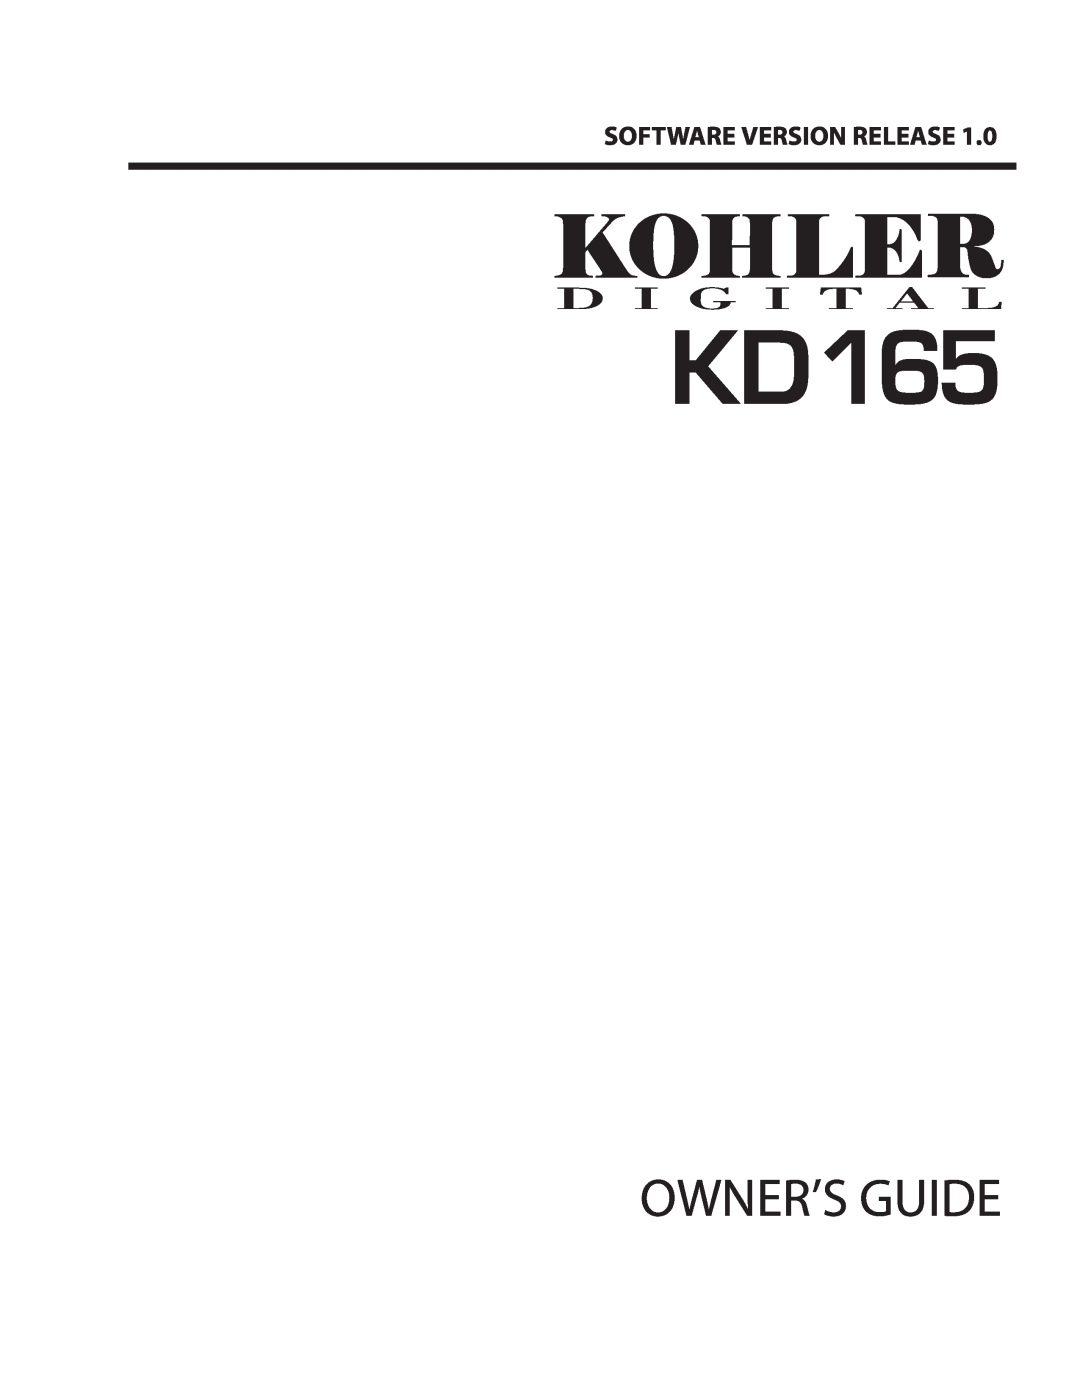 Kohler KD165 manual Owner’S Guide, Software Version Release 